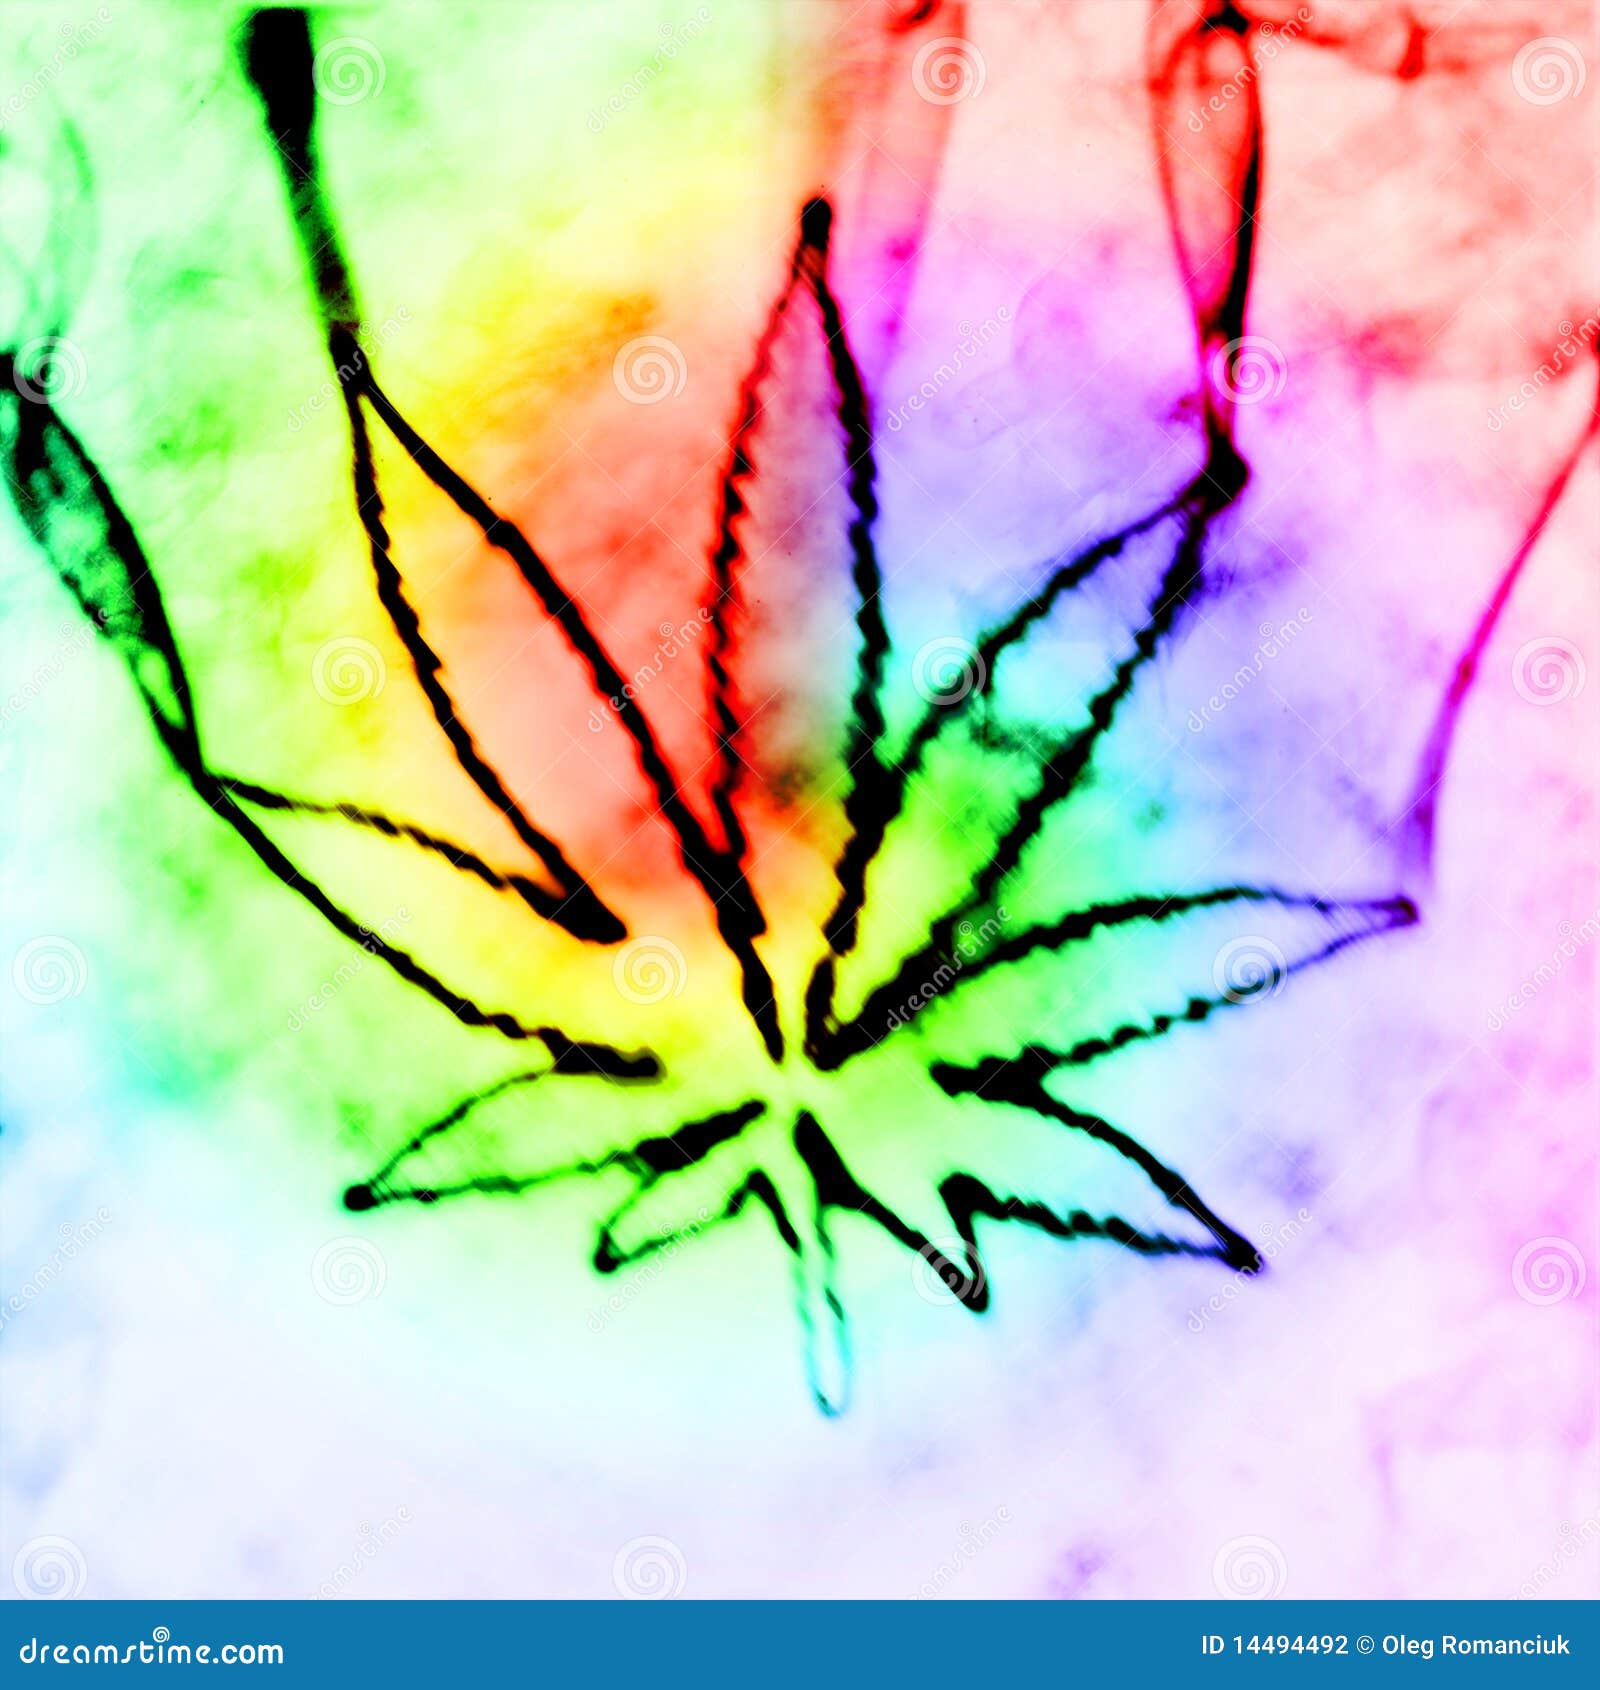 Картинки дыма марихуаны tor browser только россия вход на гидру